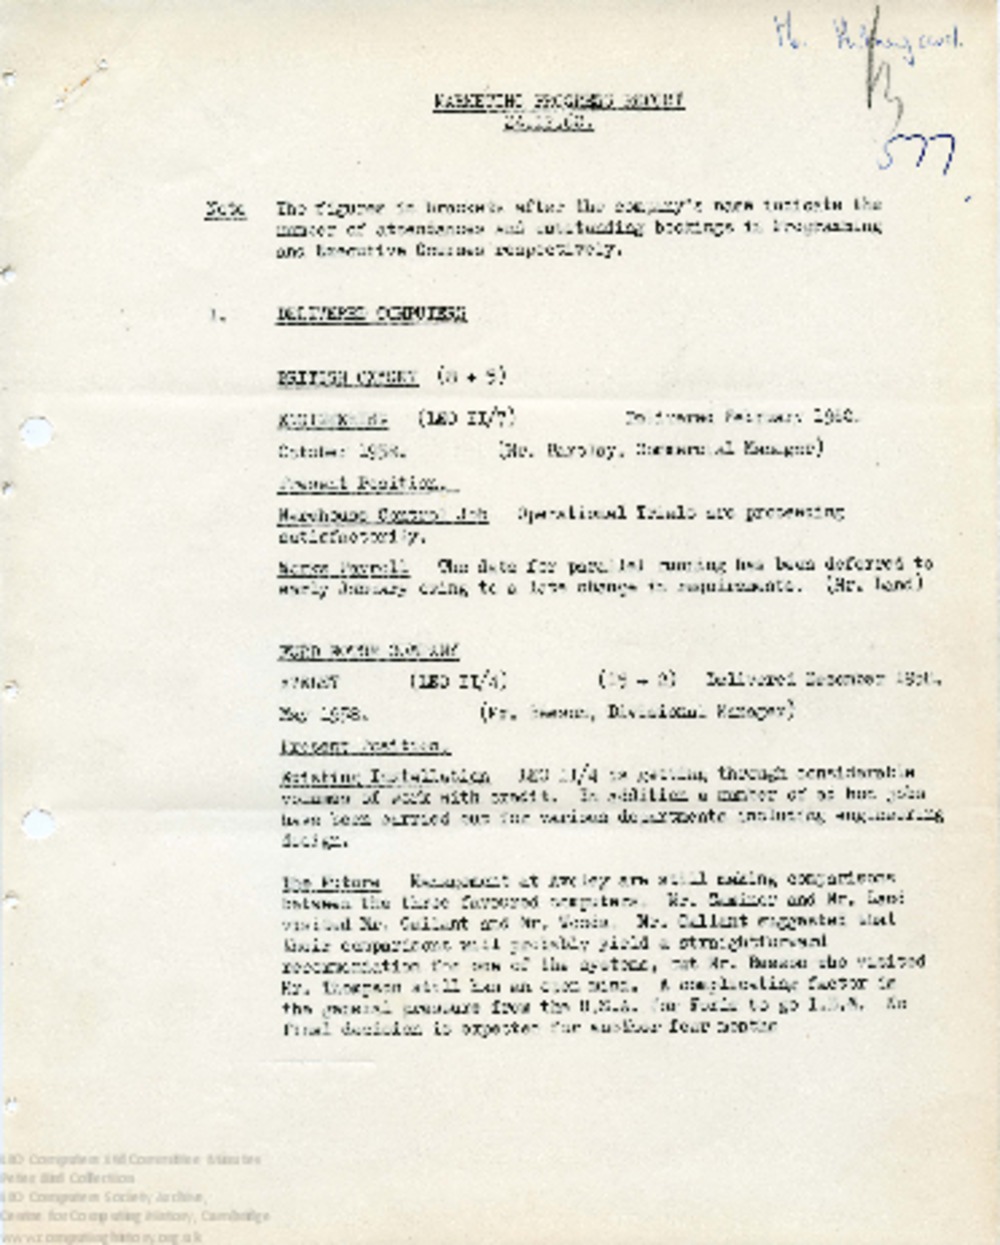 Article: 64494 Marketing Progress Report, 24th Dec 1960